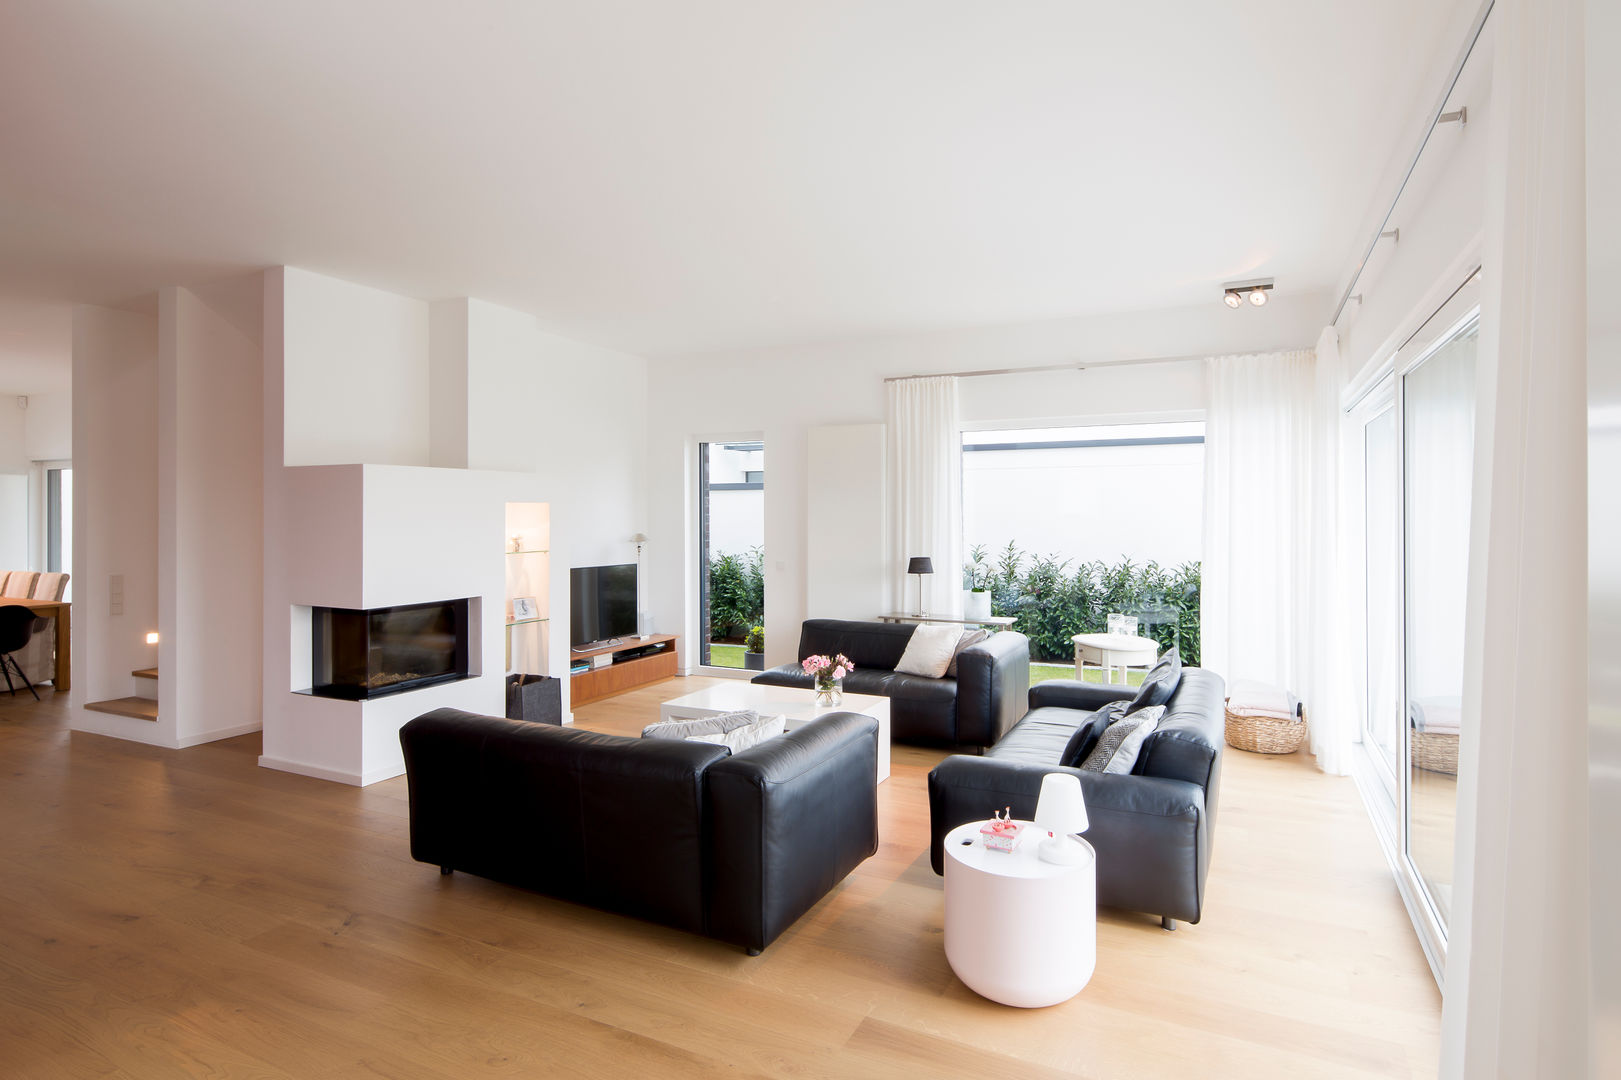 Haus HC, Ferreira | Verfürth Architekten Ferreira | Verfürth Architekten Modern living room